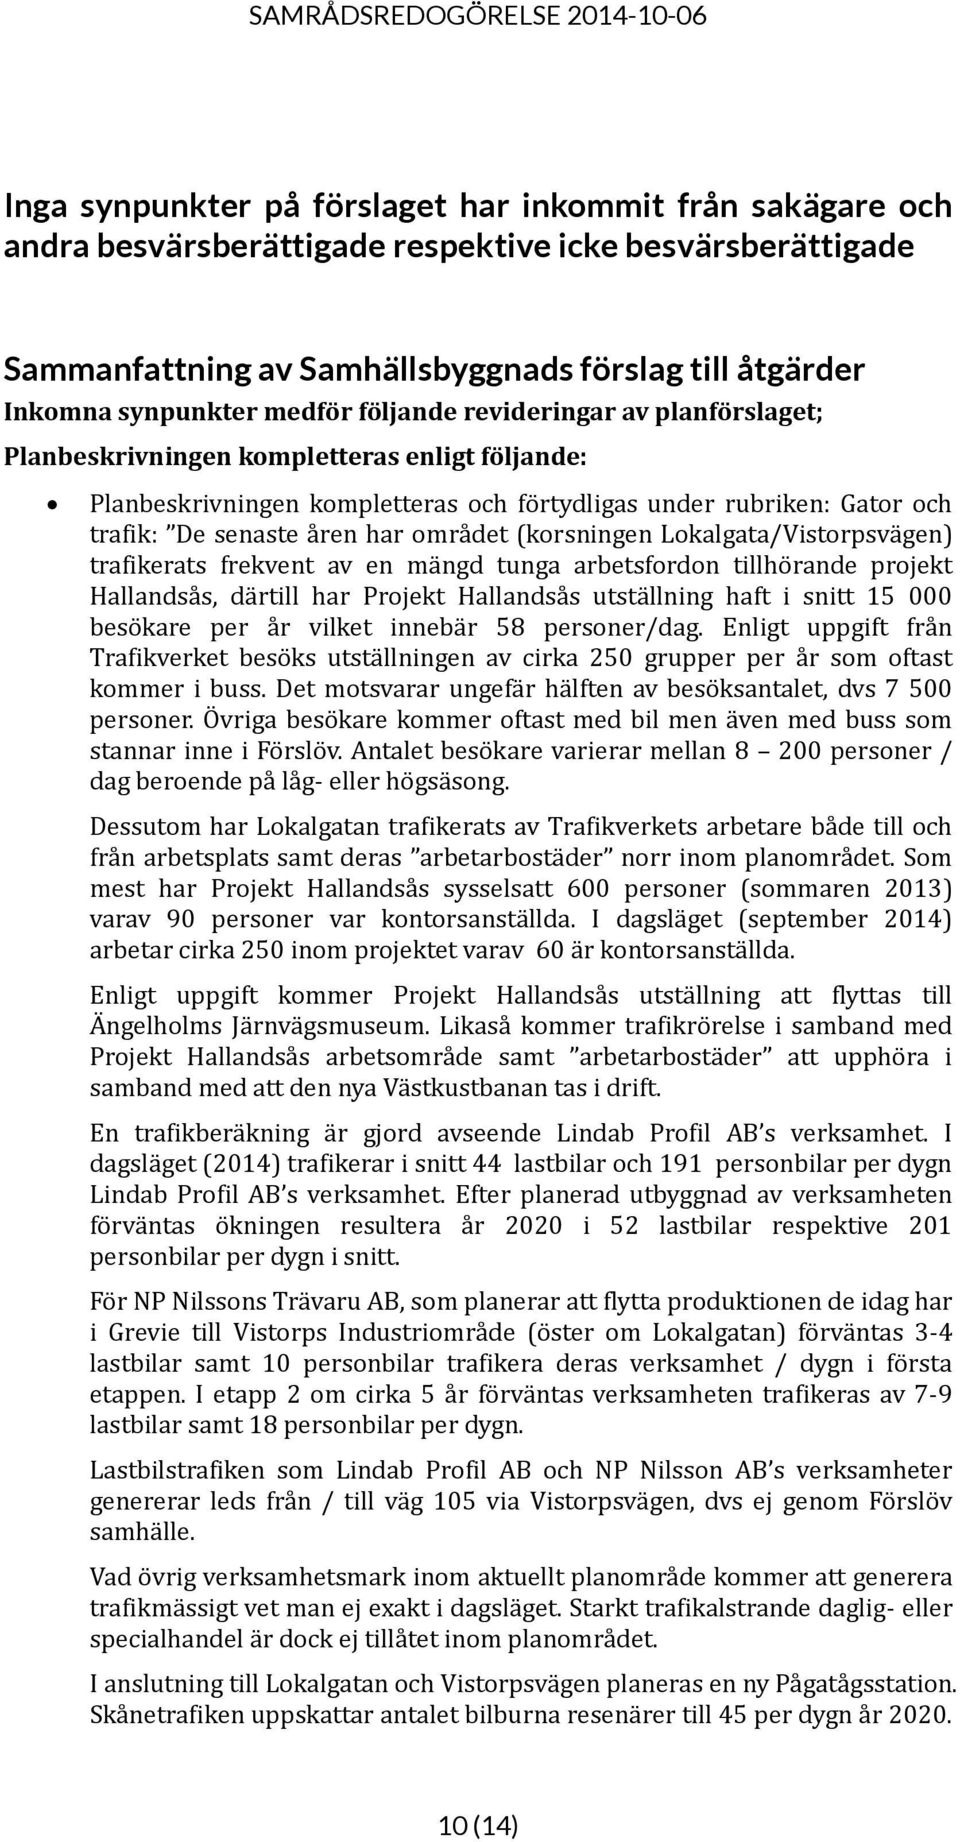 området (korsningen Lokalgata/Vistorpsvägen) trafikerats frekvent av en mängd tunga arbetsfordon tillhörande projekt Hallandsås, därtill har Projekt Hallandsås utställning haft i snitt 15 000